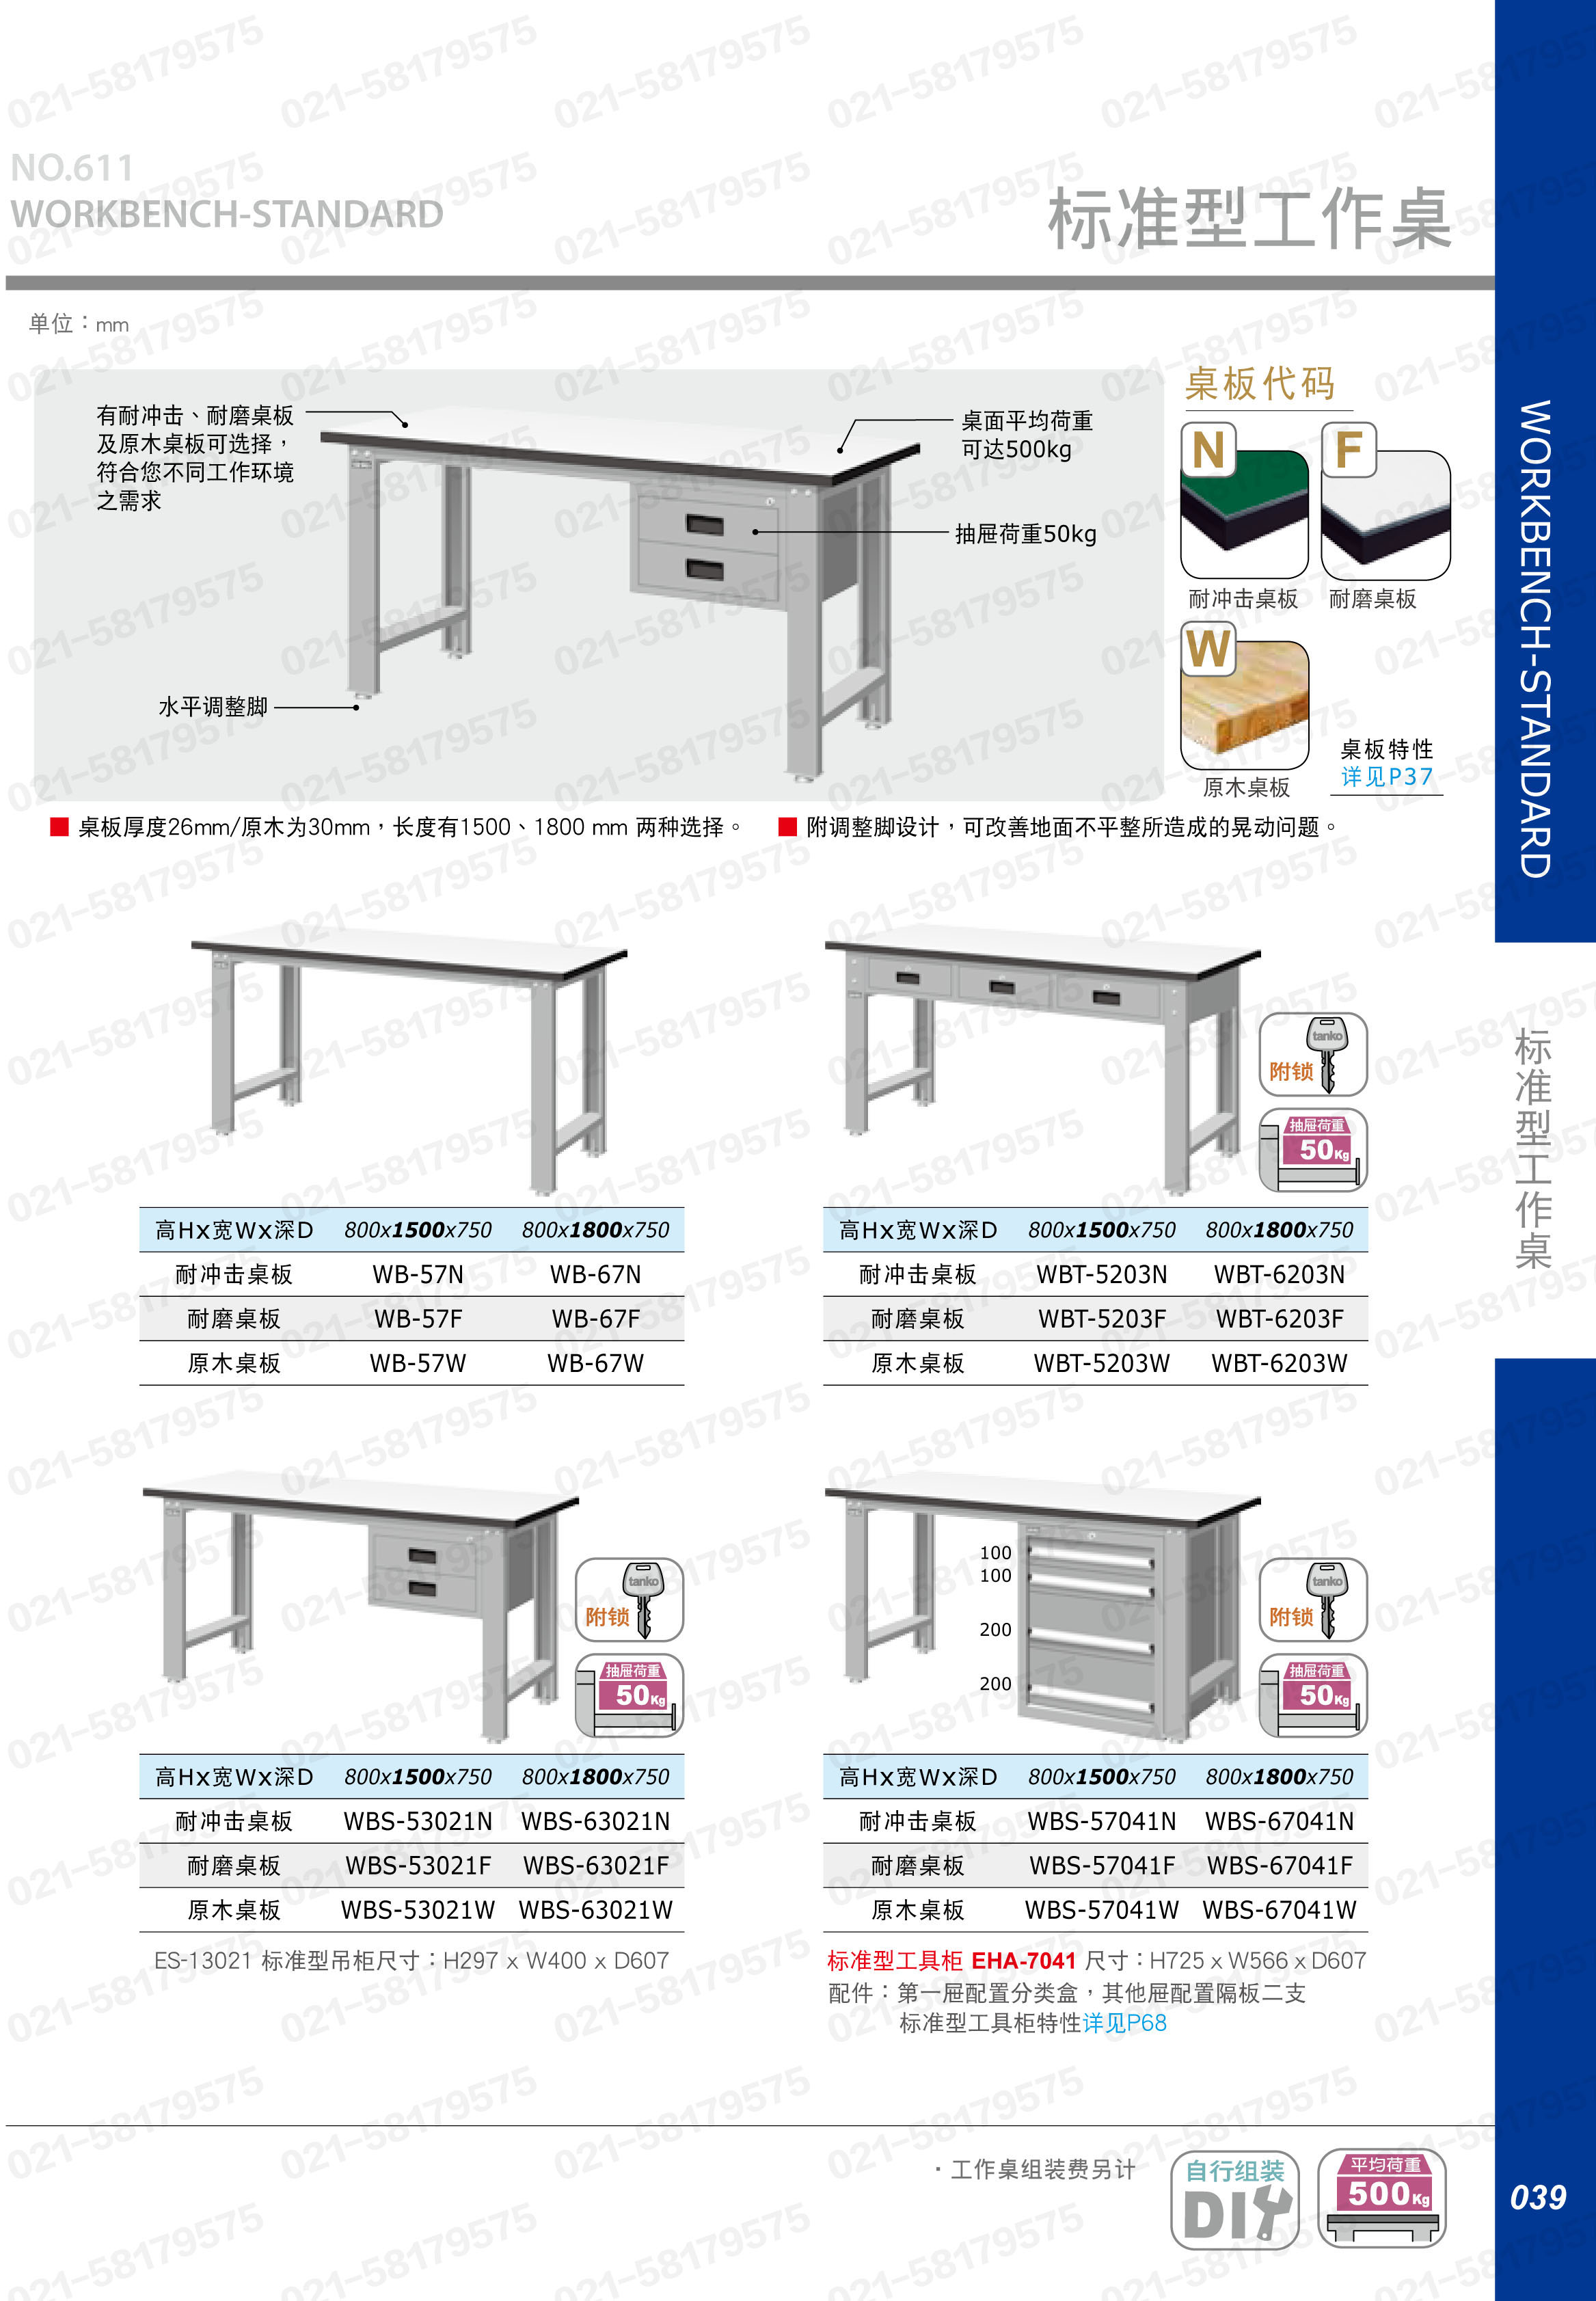 轻型工作桌1500×750×800mm 耐磨桌板 带双吊抽,WBS-53021F,5D2936